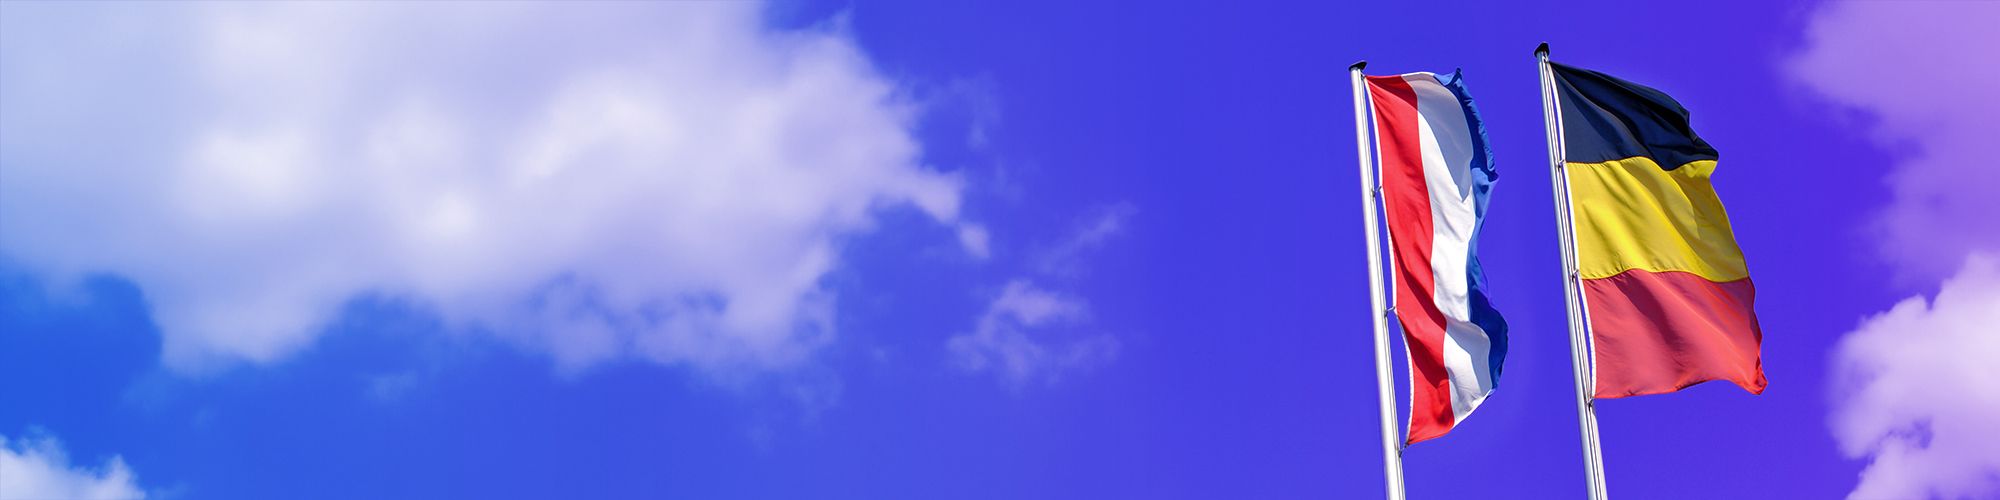 Een vlag van België en één van Nederland onder een blauwe hemel met wolken.